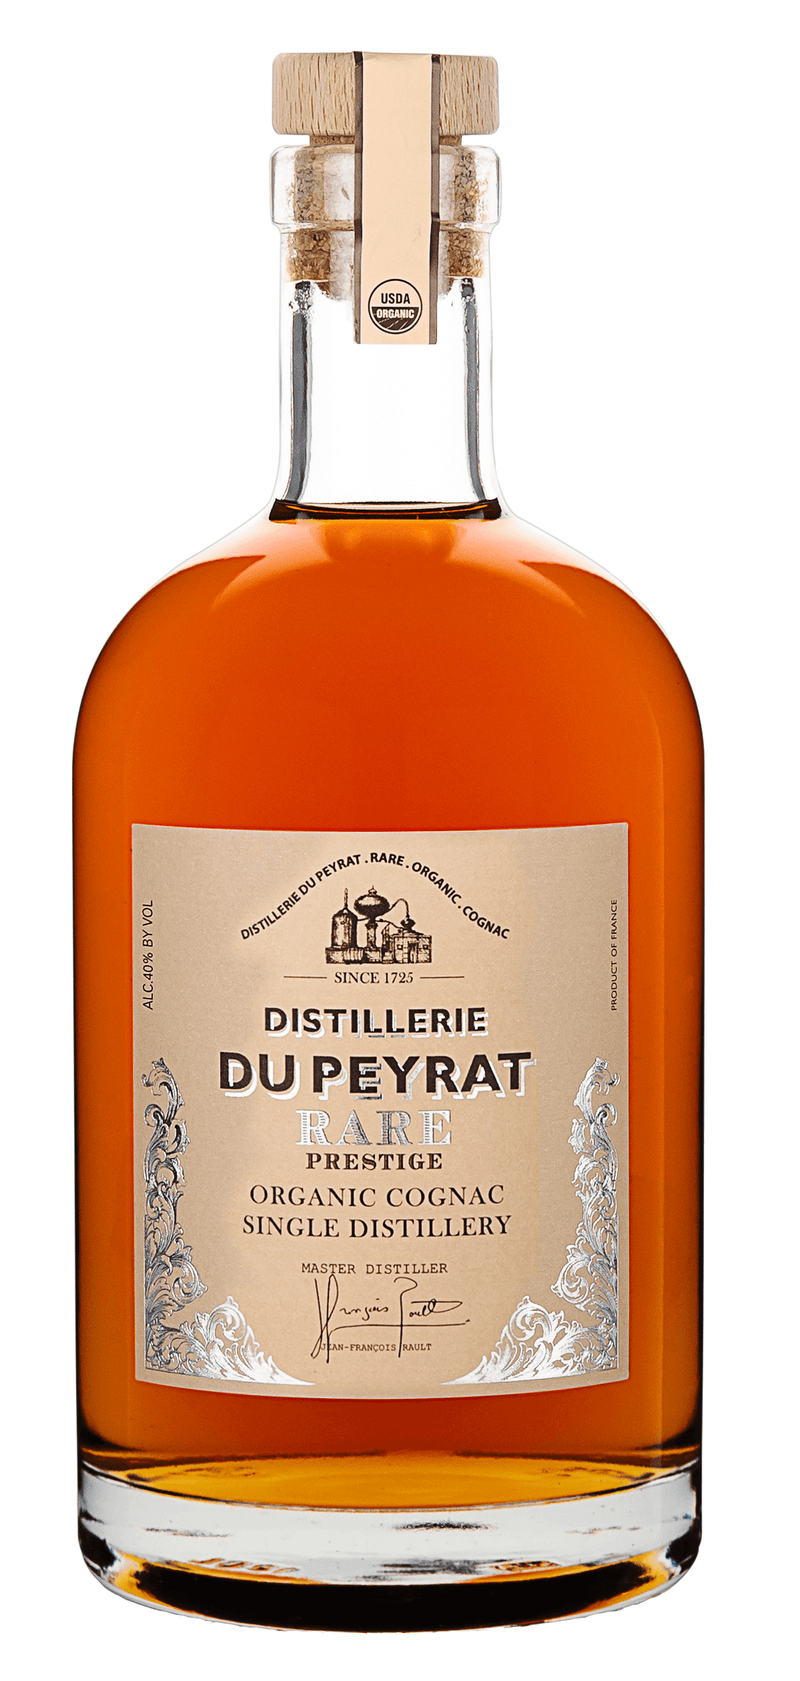 Distillerie Du Peyrat Rare Prestige Organic Cognac Single Distillery